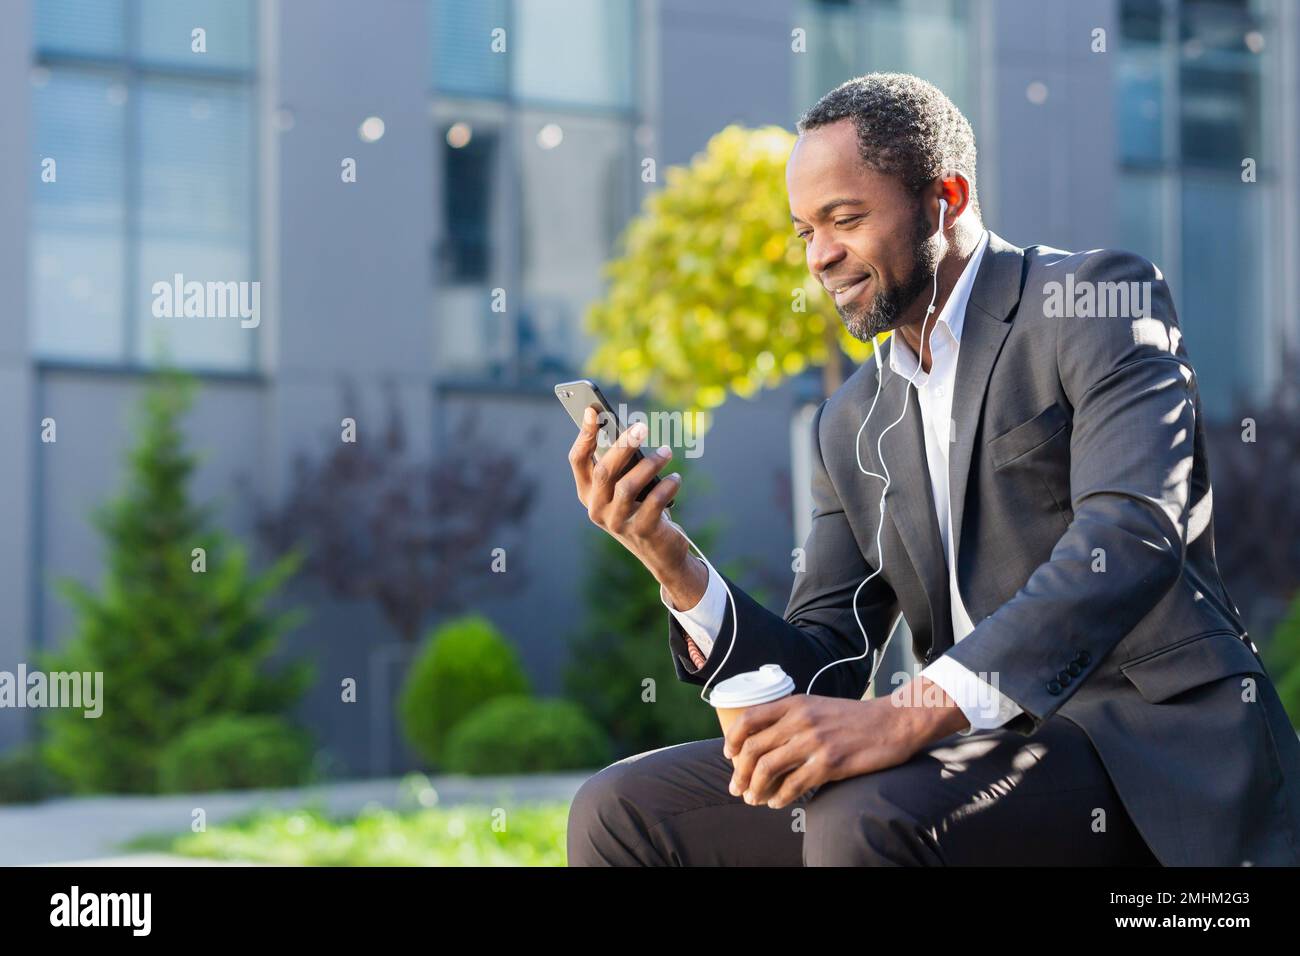 Homme d'affaires afro-américain utilisant le téléphone assis sur un banc à l'extérieur du bâtiment de bureau, le patron regardant la vidéo et souriant dans des écouteurs, homme à l'extérieur écoutant de la musique livres audio et des podcasts radio en ligne. Banque D'Images